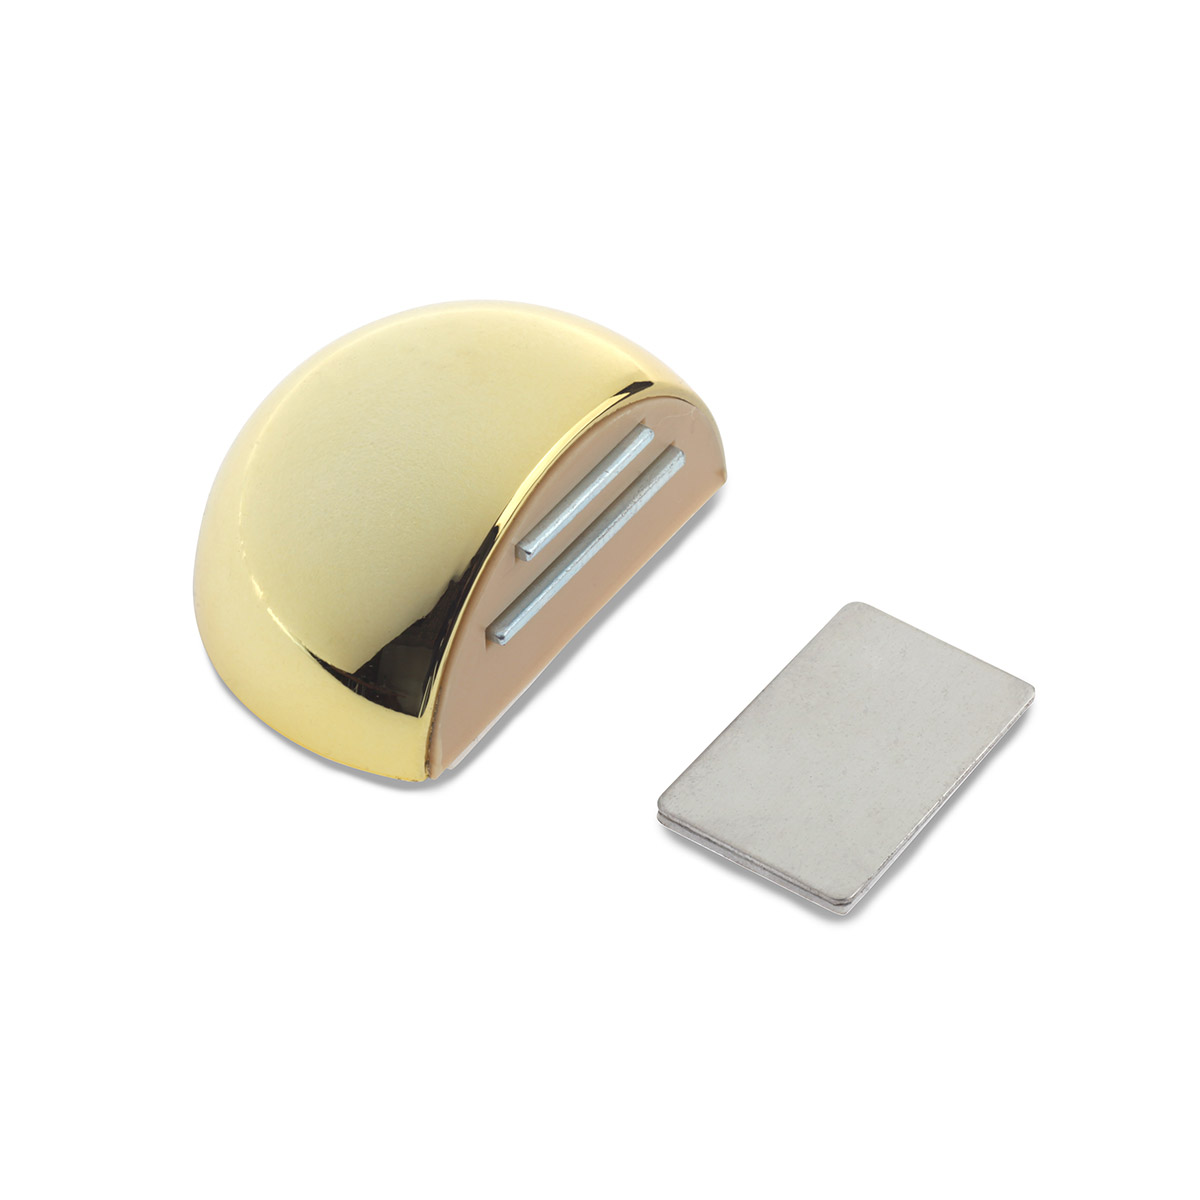 Retenedor de puerta con imán adhesivo con acabado oro. Dimensiones: 51x39x26 mm